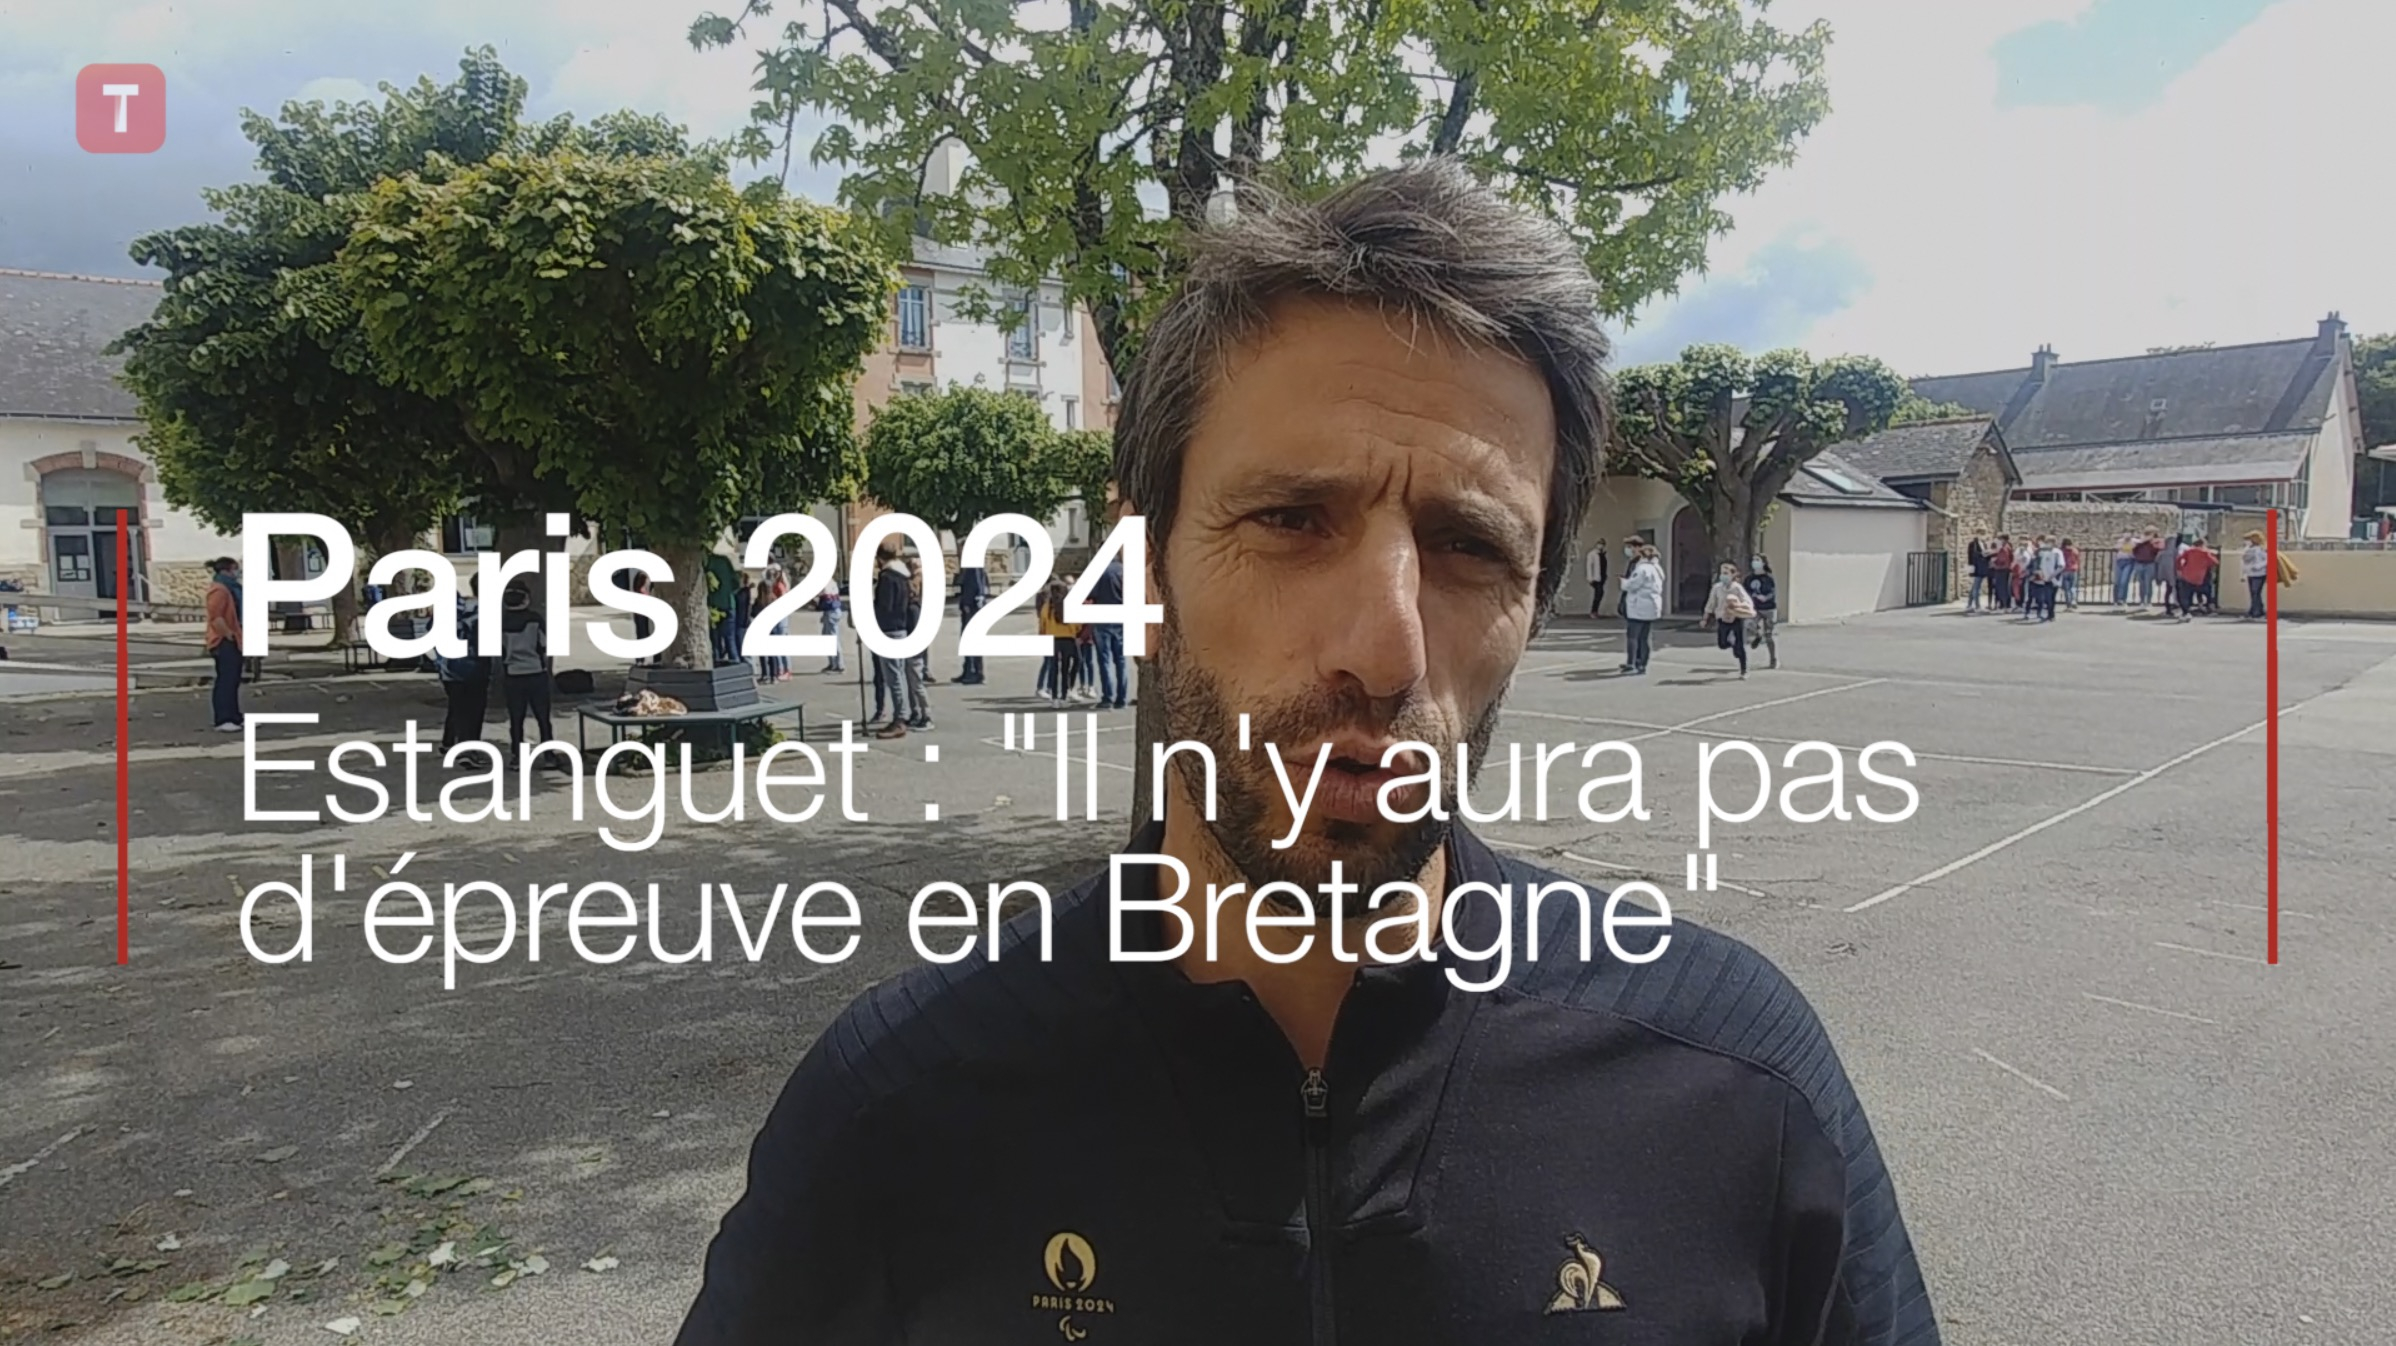 Paris 2024. Estanguet : "Il n'y aura pas d'épreuve en Bretagne" (Le Télégramme)